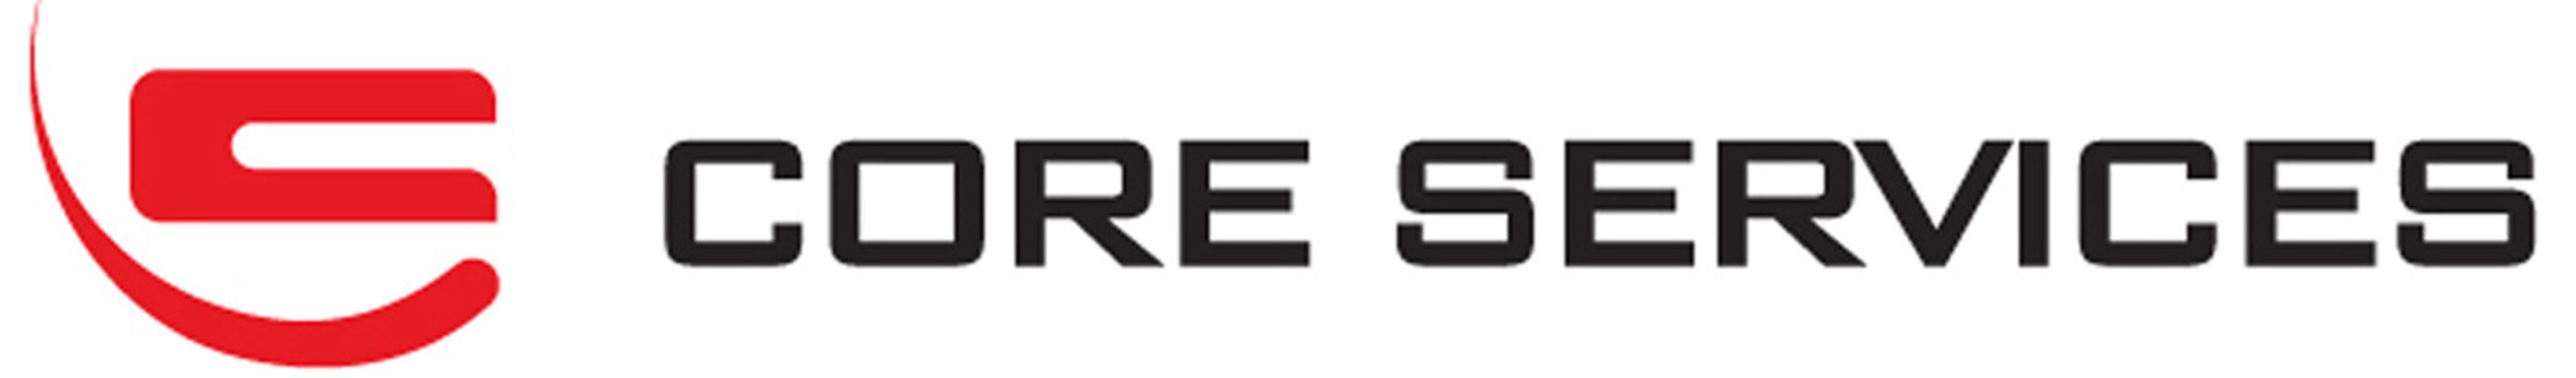 Core Services Corporation Logo. (PRNewsFoto/Core Services Corporation) (PRNewsFoto/)